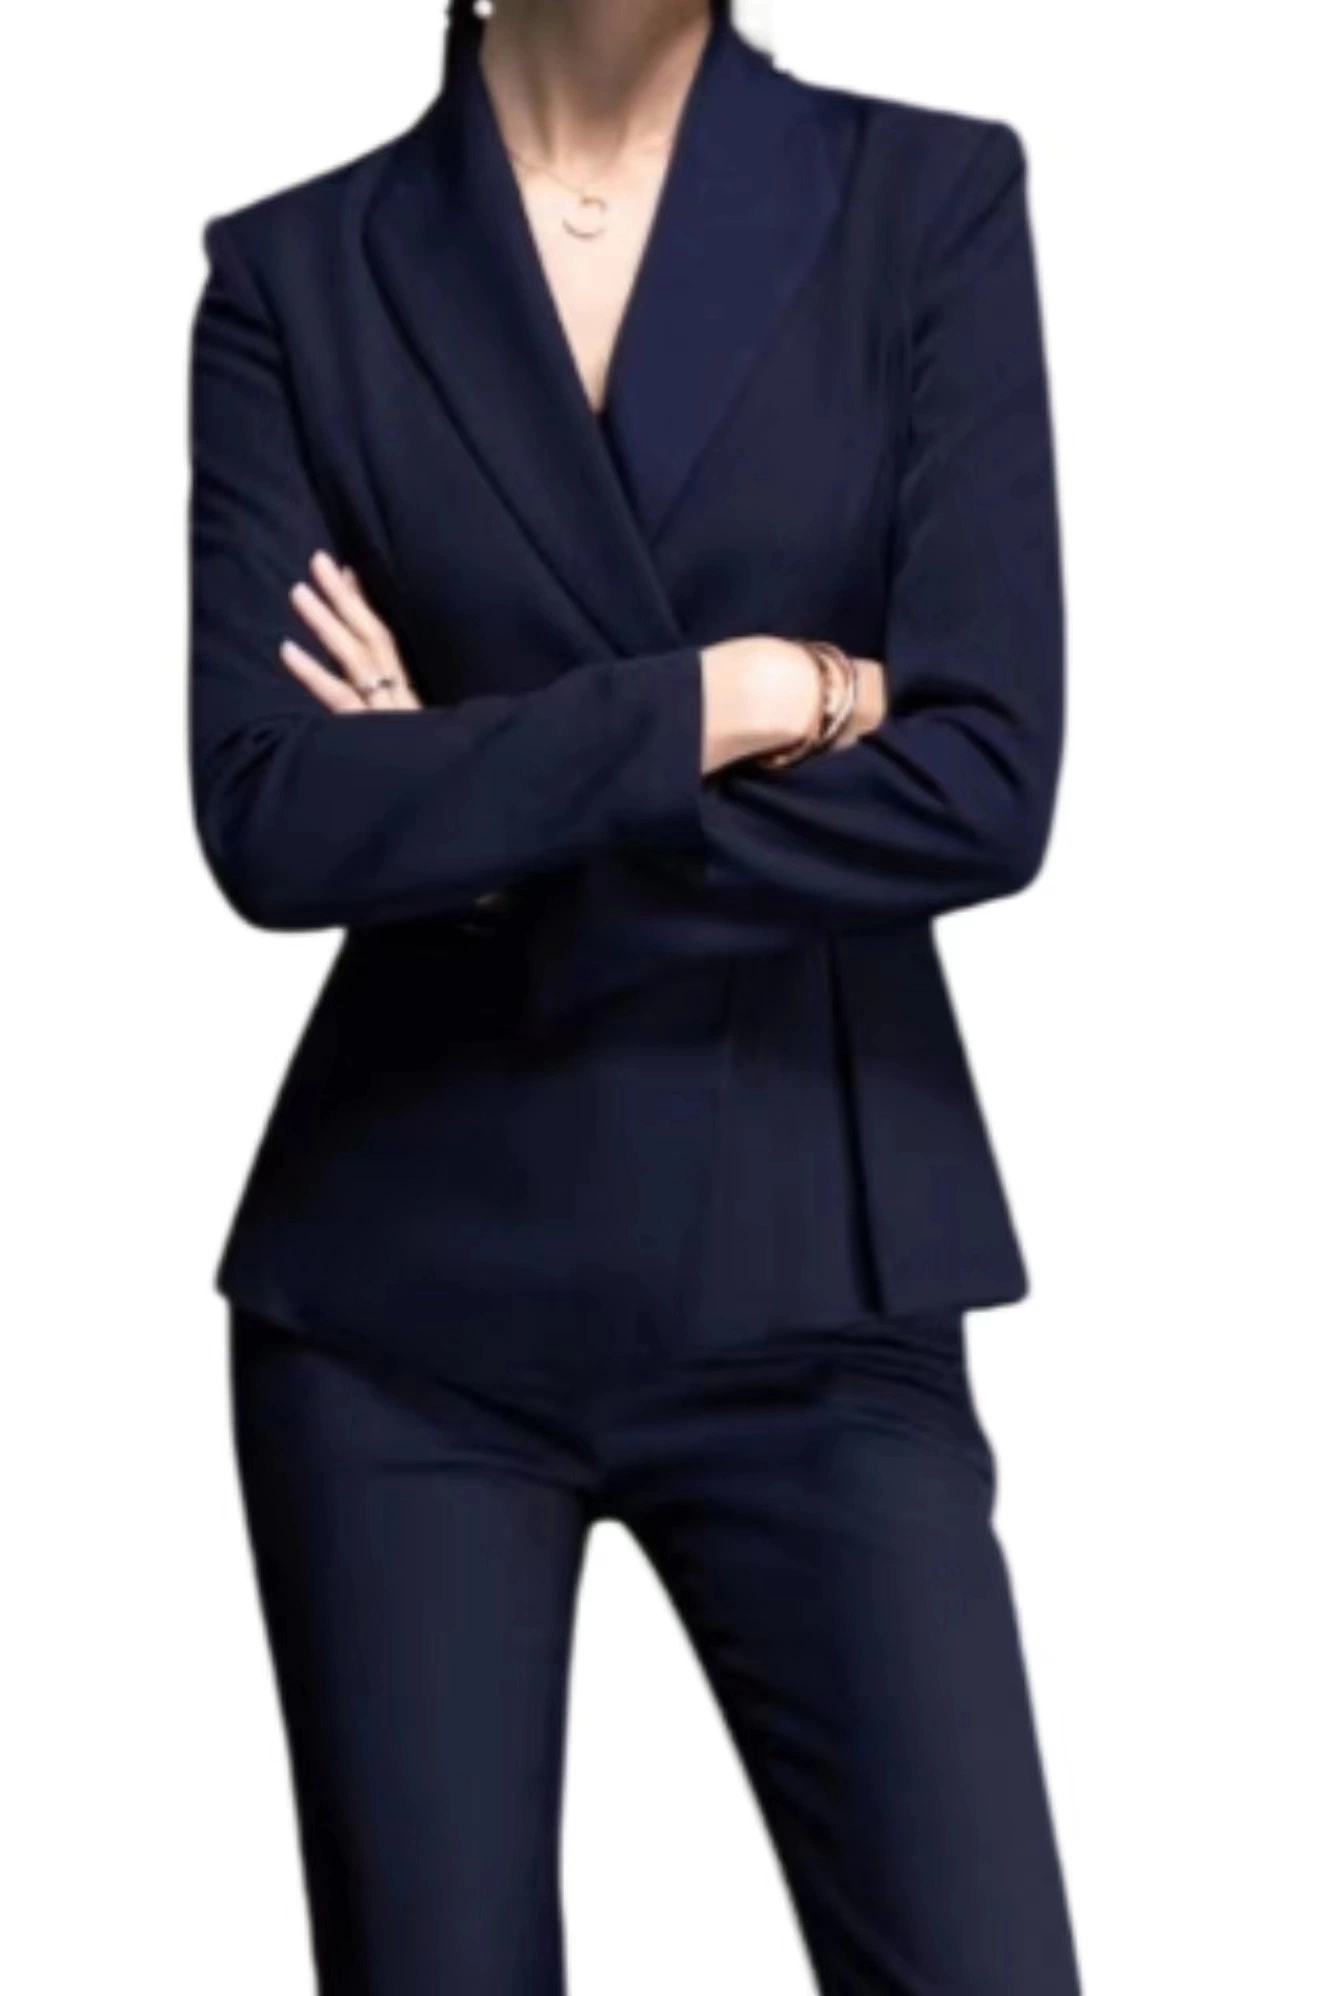 De la Mujer 2 Piezas Pantalón Traje de chaqueta y falda Non-Ironing traje profesional para el desgaste de la oficina de trabajo